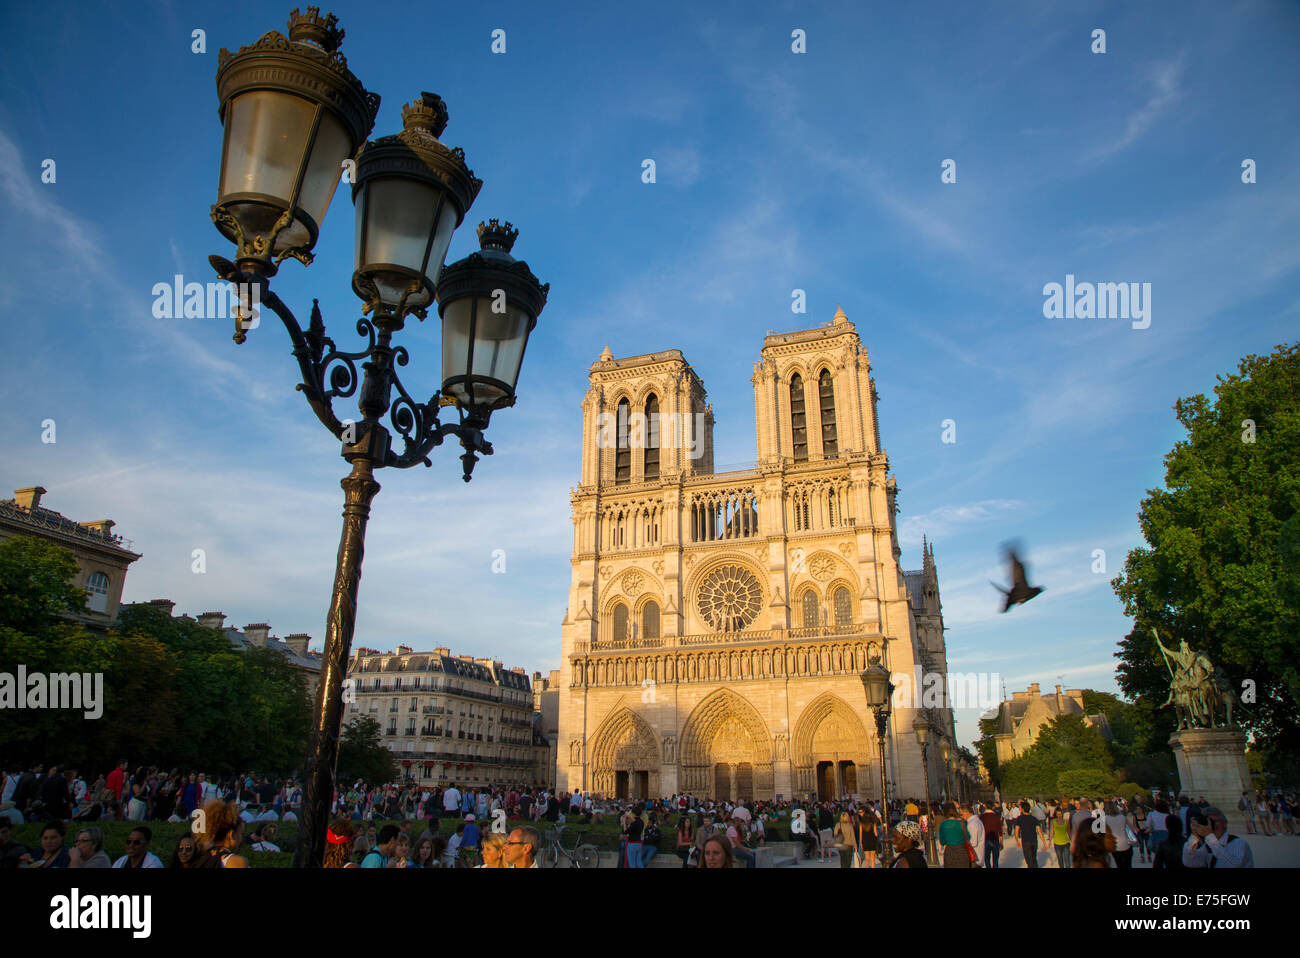 Soirée bondée ci-dessous Cathédrale Notre Dame, Paris, France Banque D'Images